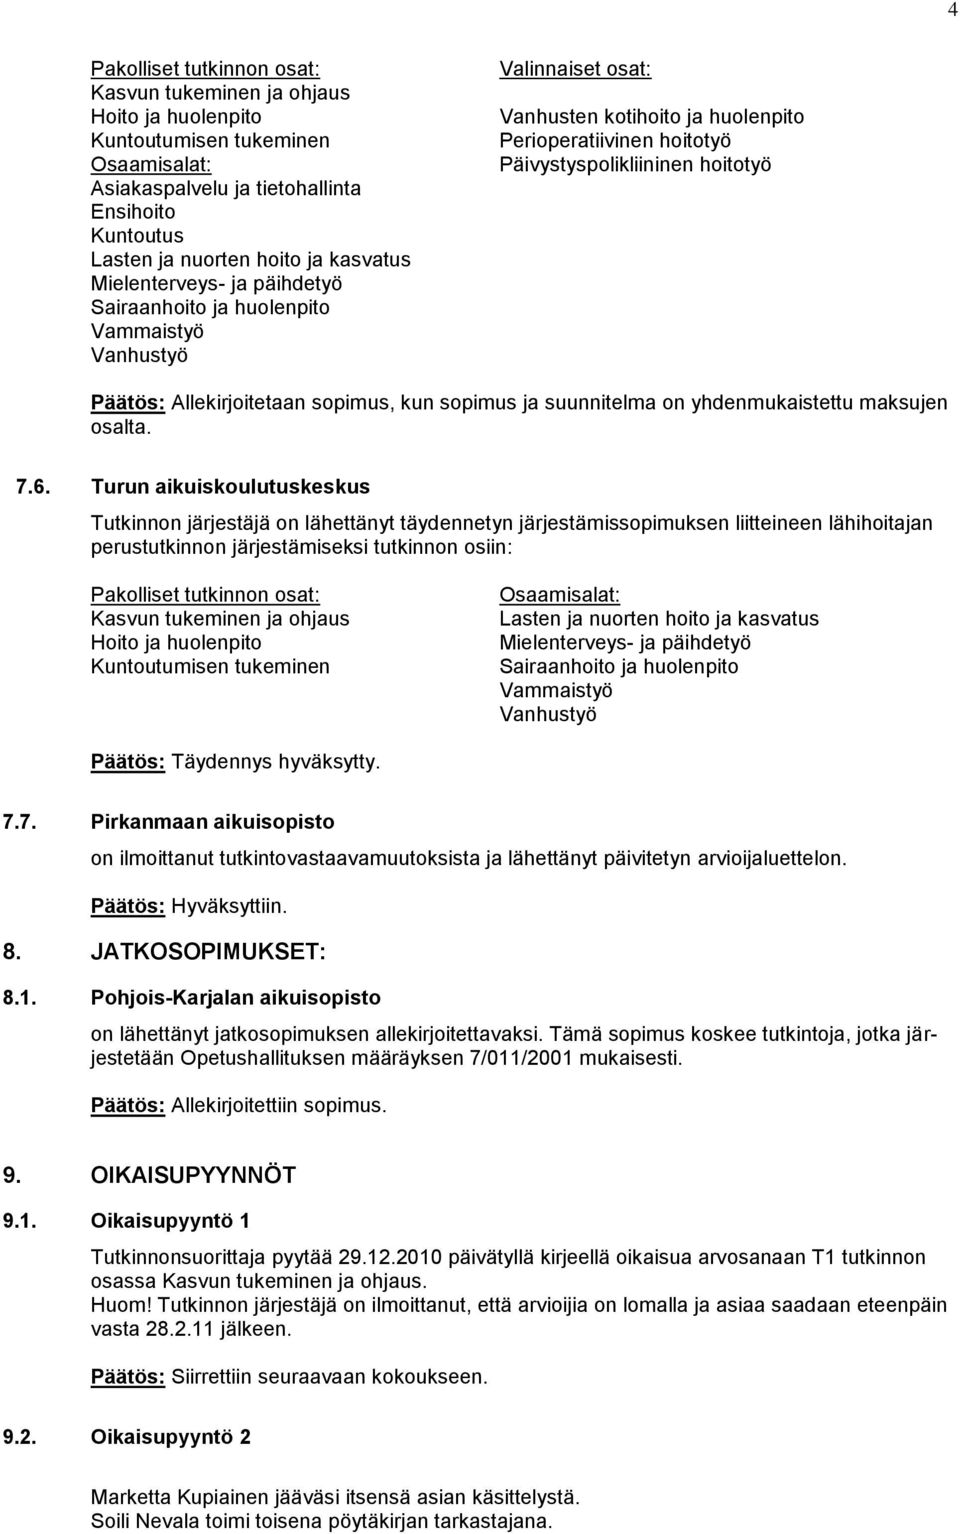 8. JATKOSOPIMUKSET: 8.1. Pohjois-Karjalan aikuisopisto on lähettänyt jatkosopimuksen allekirjoitettavaksi.